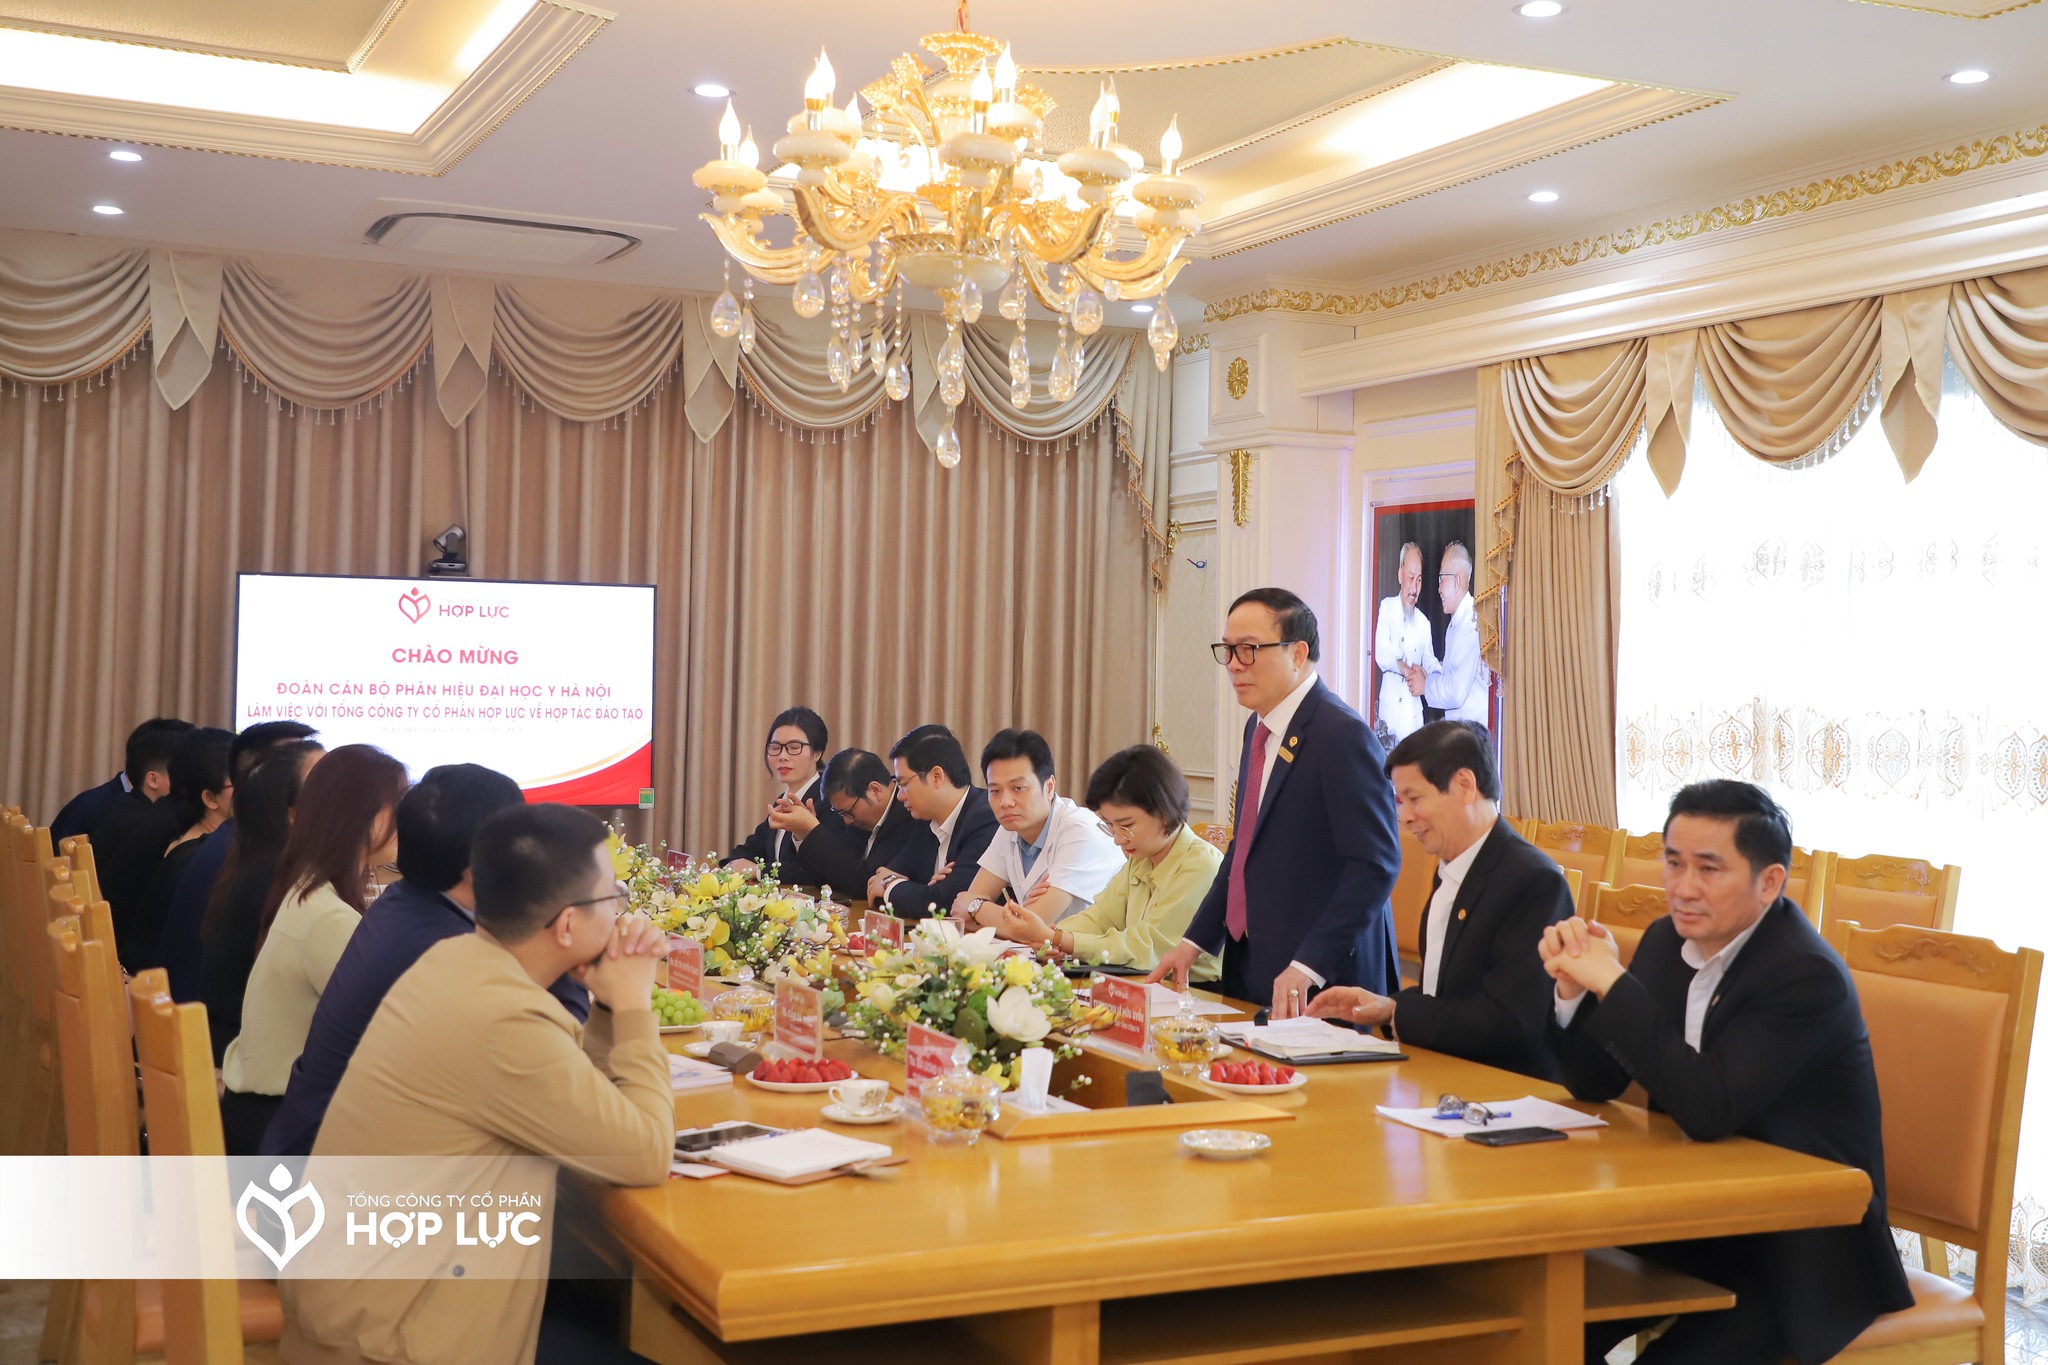 Đoàn công tác phân hiệu Đại học Y Hà Nội thăm và làm việc với Tổng Công ty